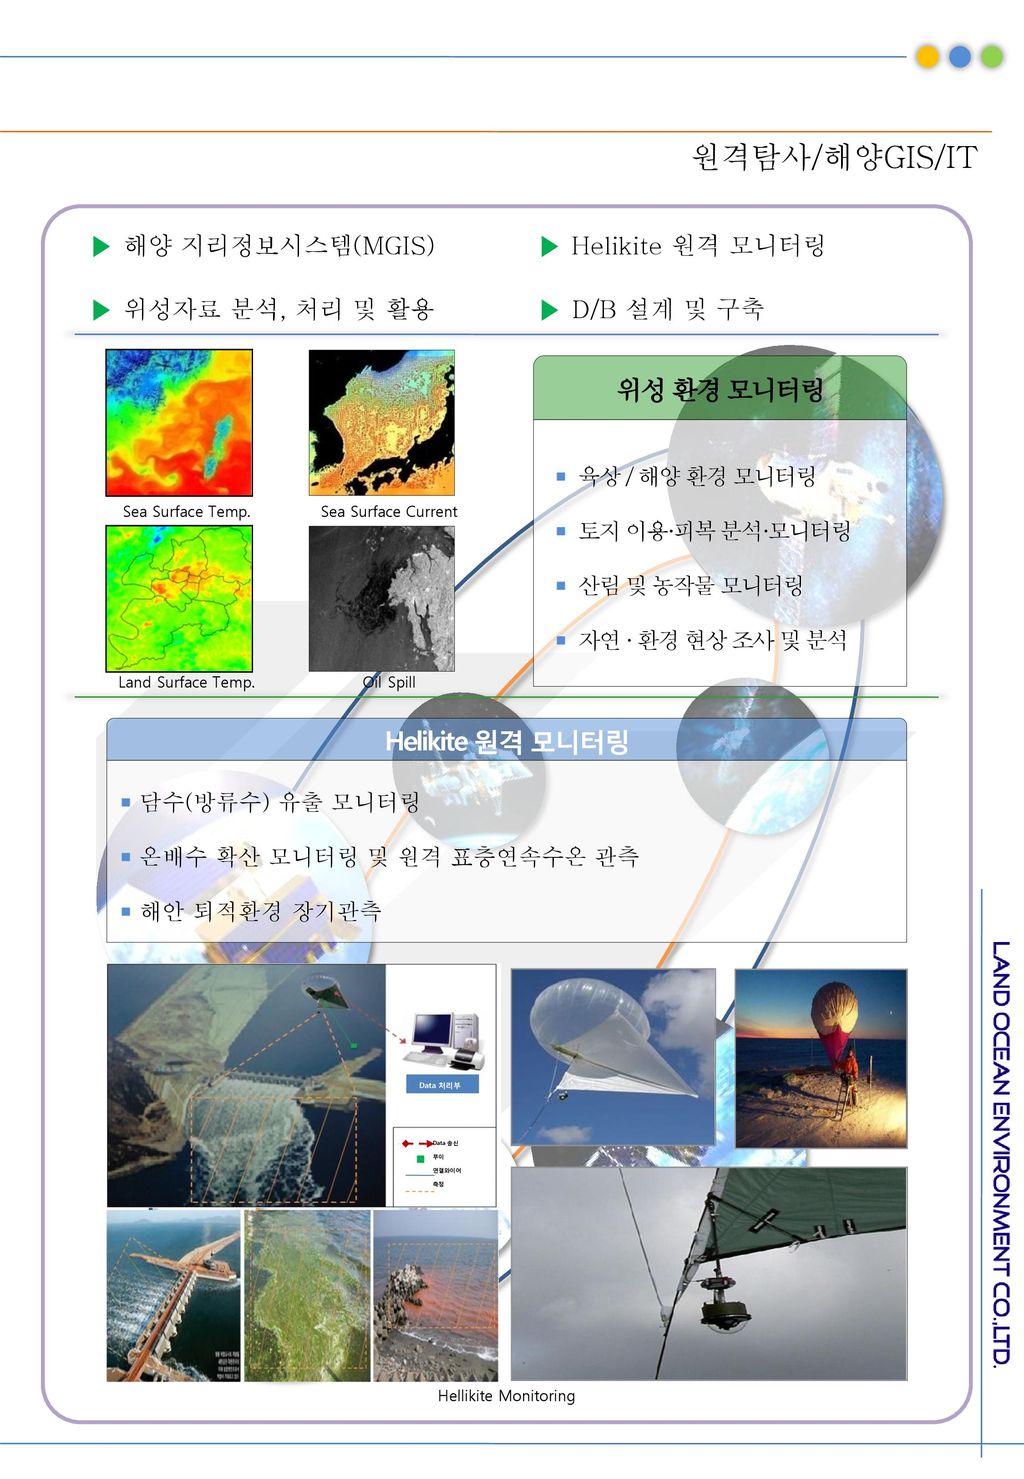 원격탐사/해양GIS/IT ▶ 해양 지리정보시스템(MGIS) ▶ 위성자료 분석, 처리 및 활용 ▶ Helikite 원격 모니터링